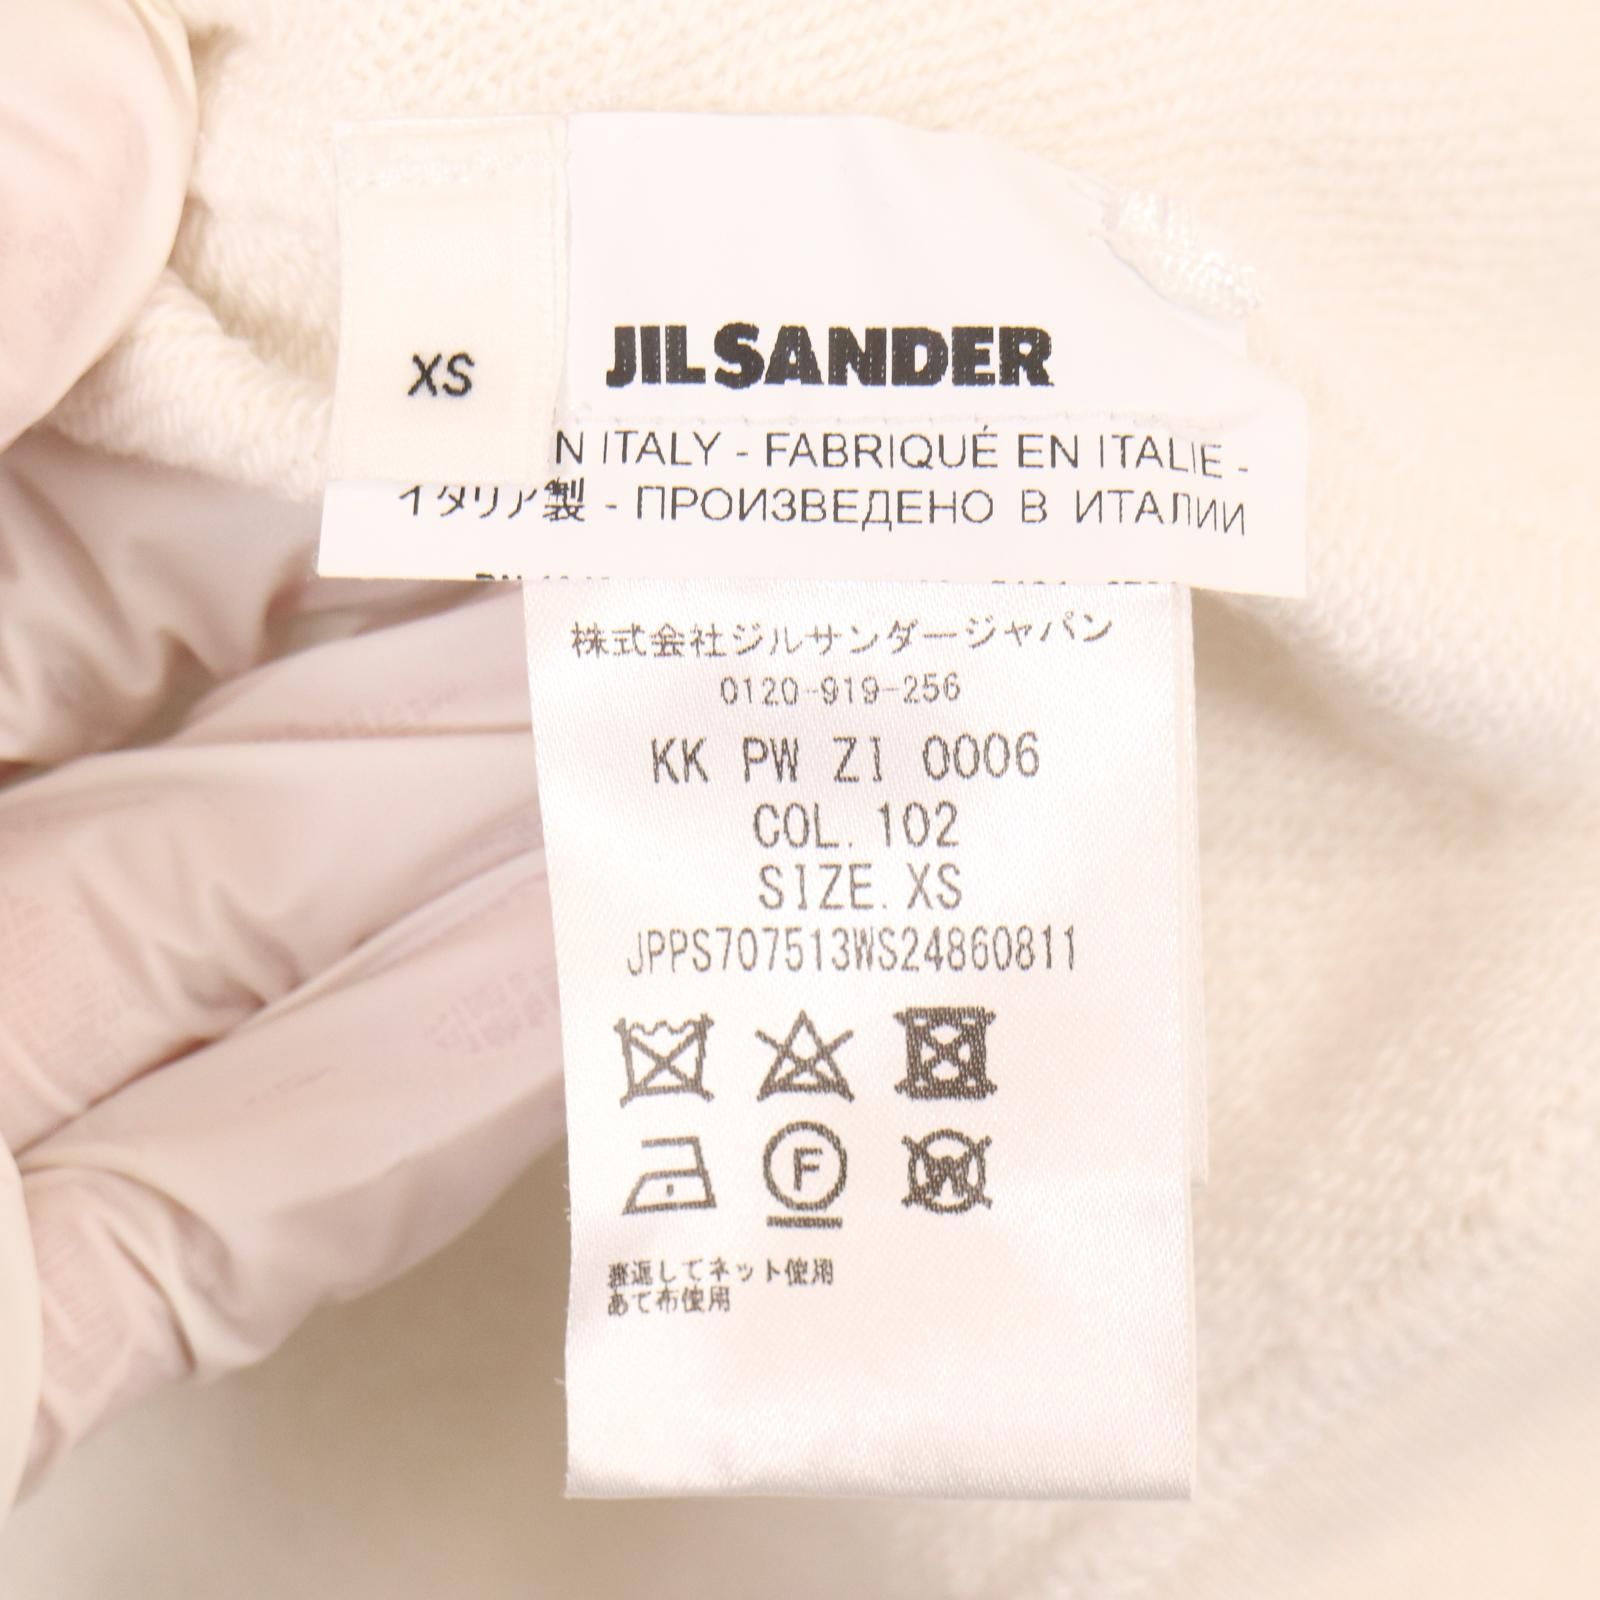 JIL SANDER ジルサンダー JPPS707513 ホワイト コットン ロゴスウェット XS